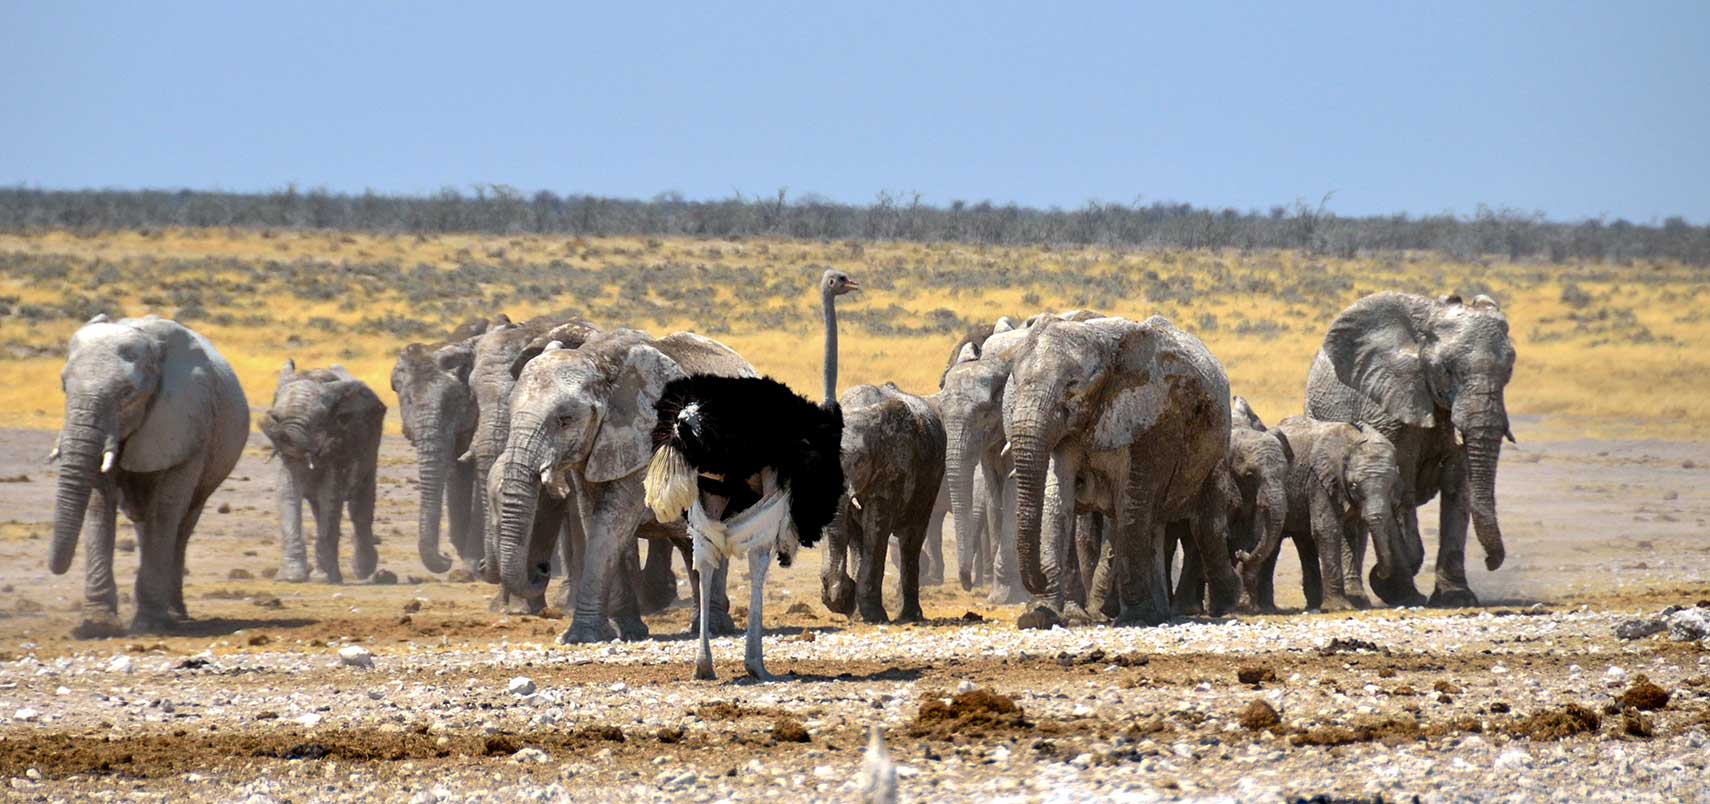 Desert elephants in the Etosha National Park of Namibia